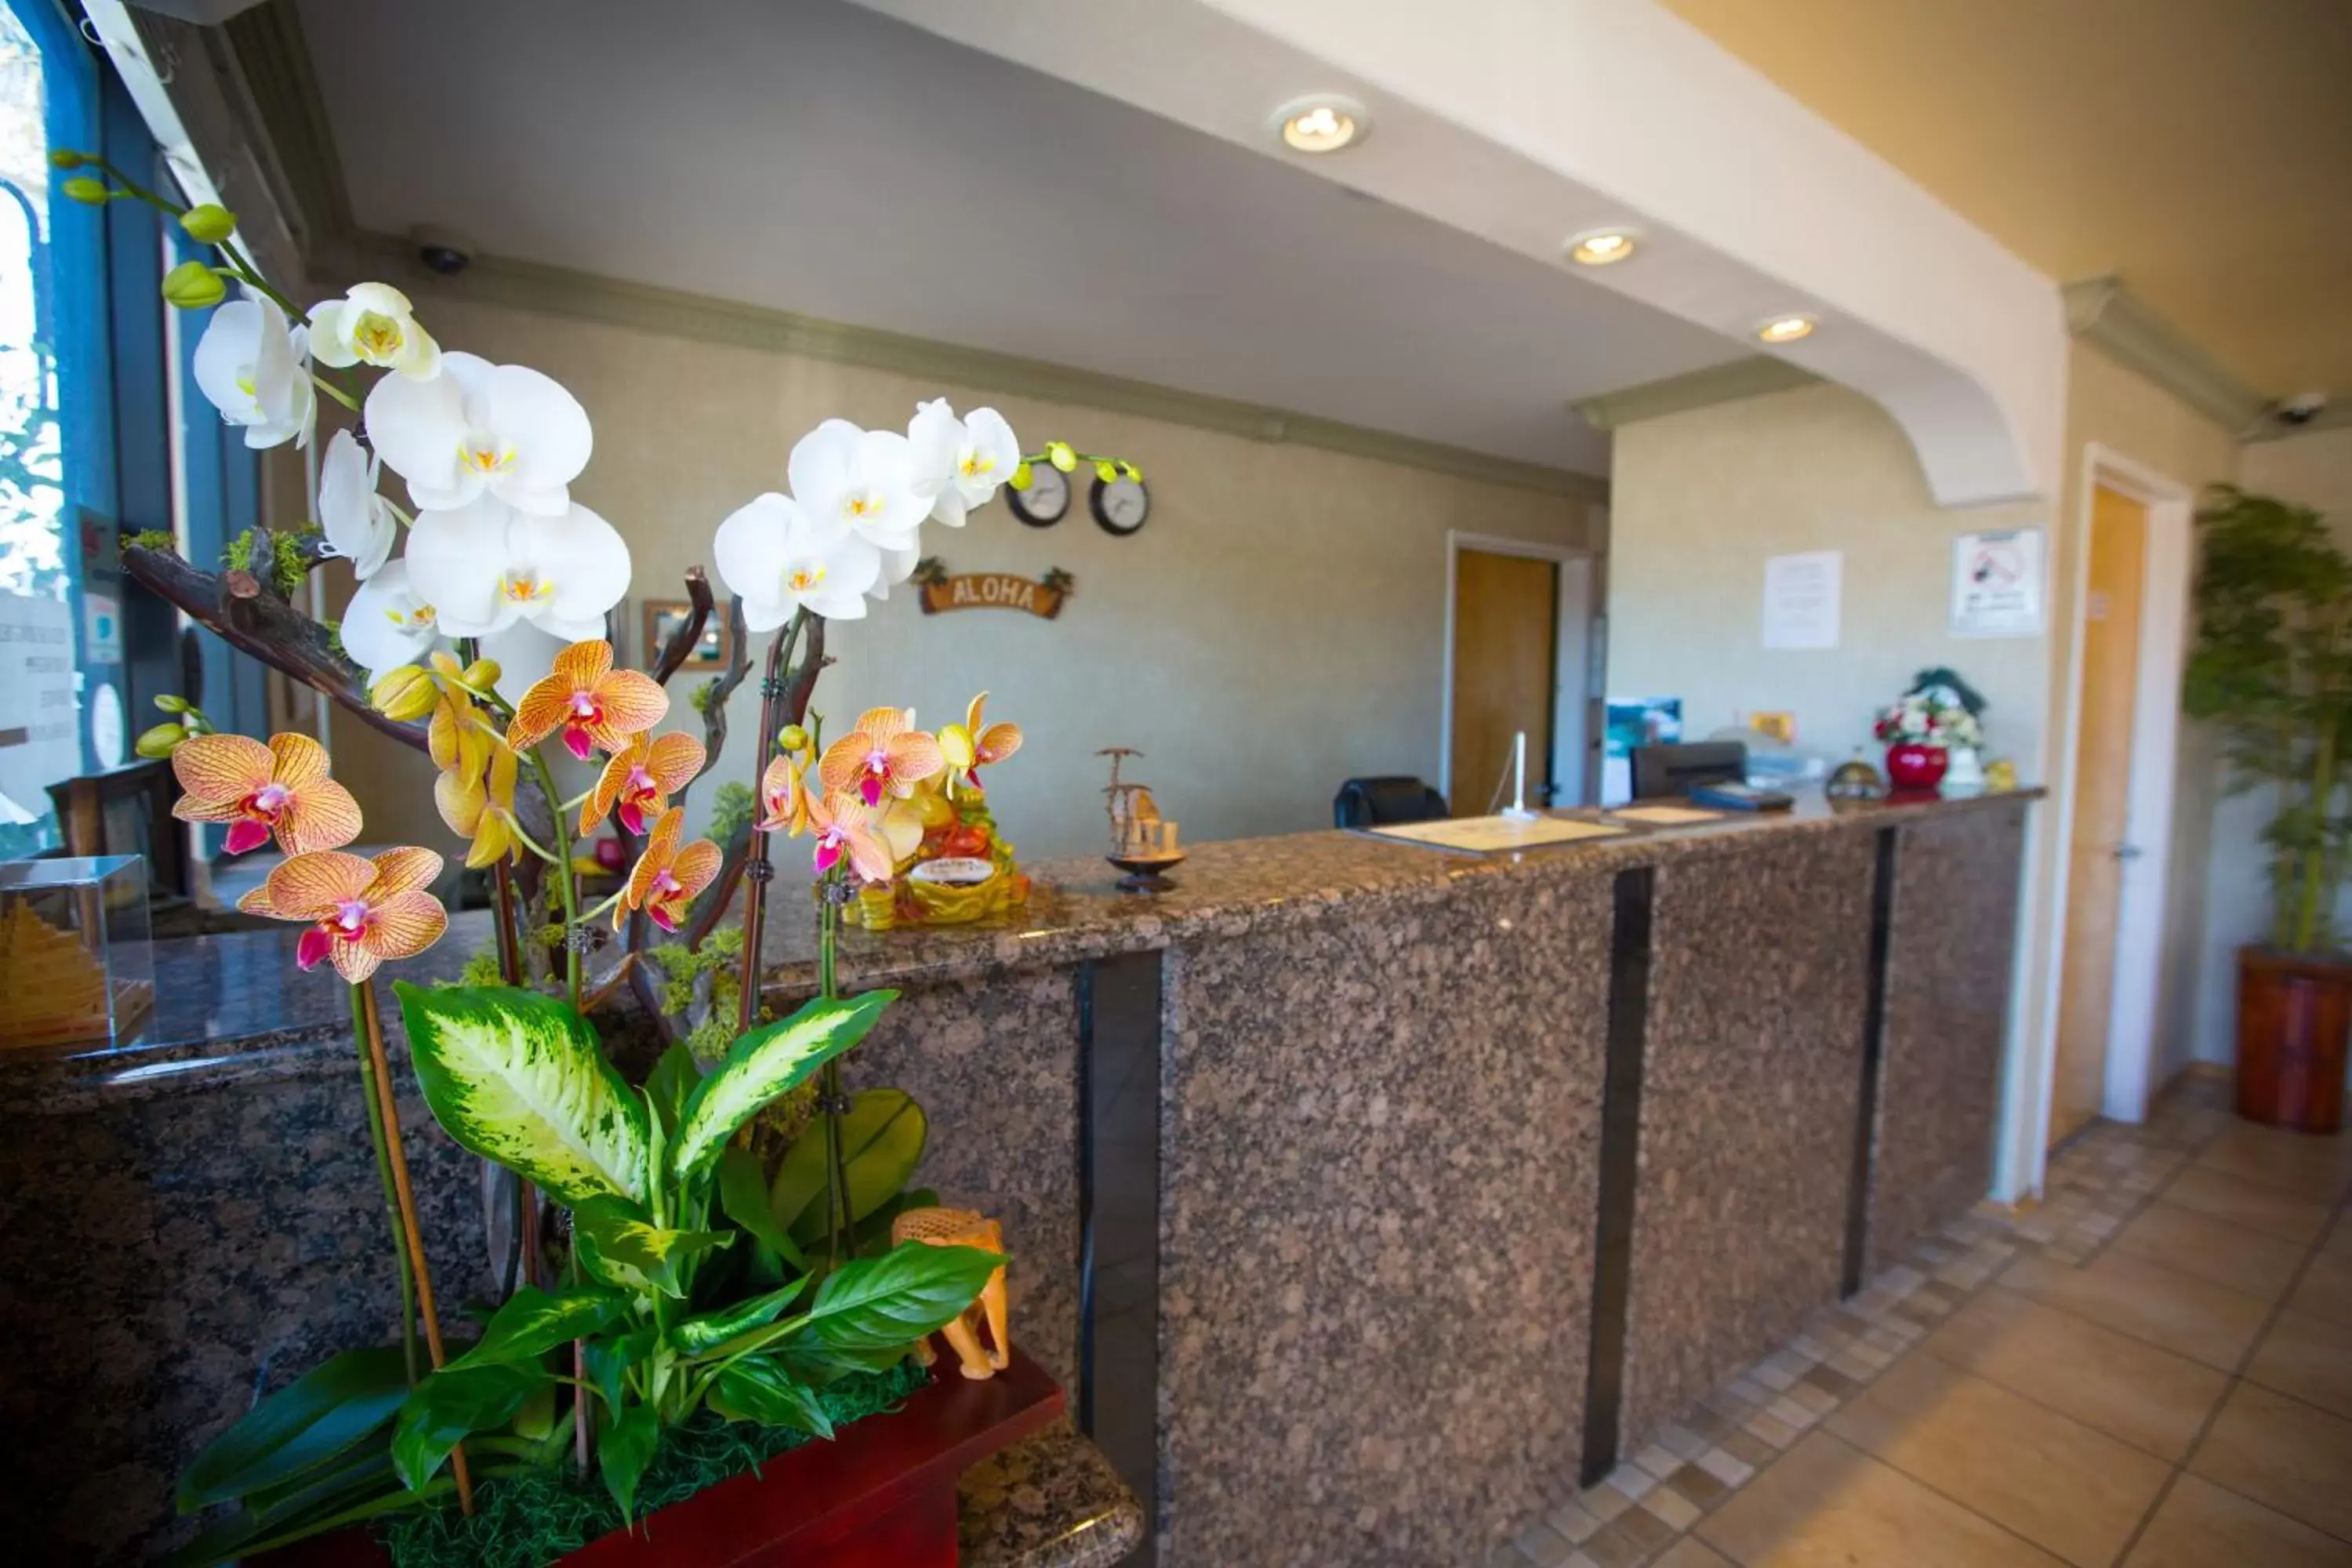 Lobby or reception, Lobby/Reception in Aloha Inn